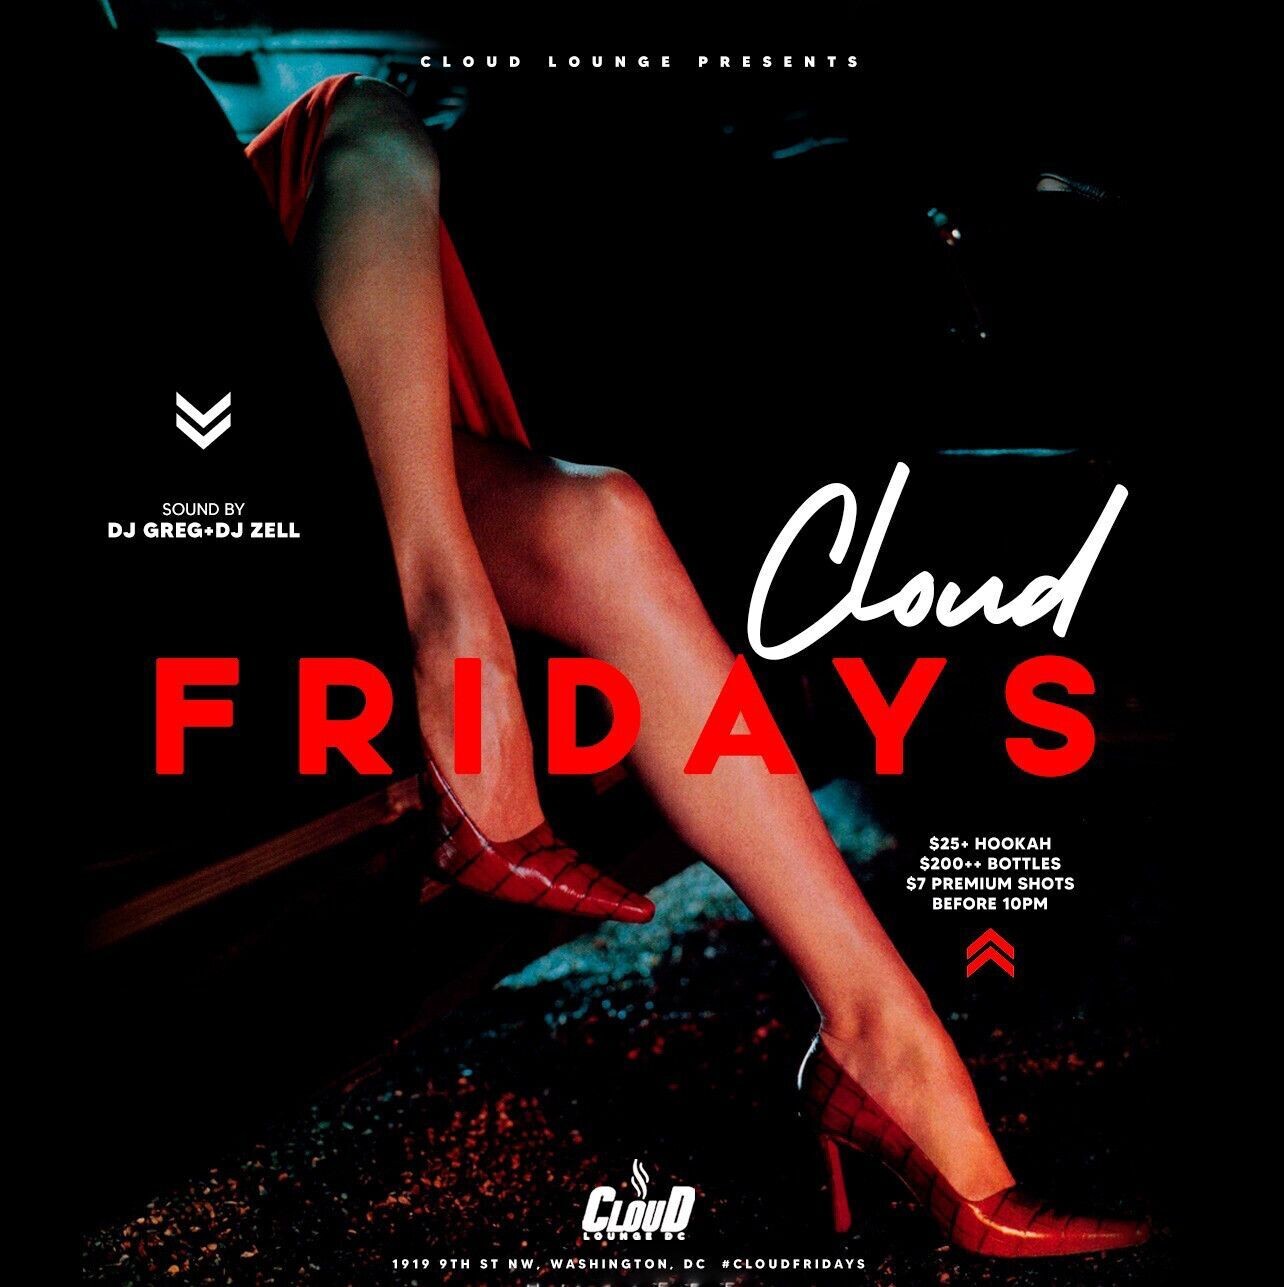 Fridays at cloud